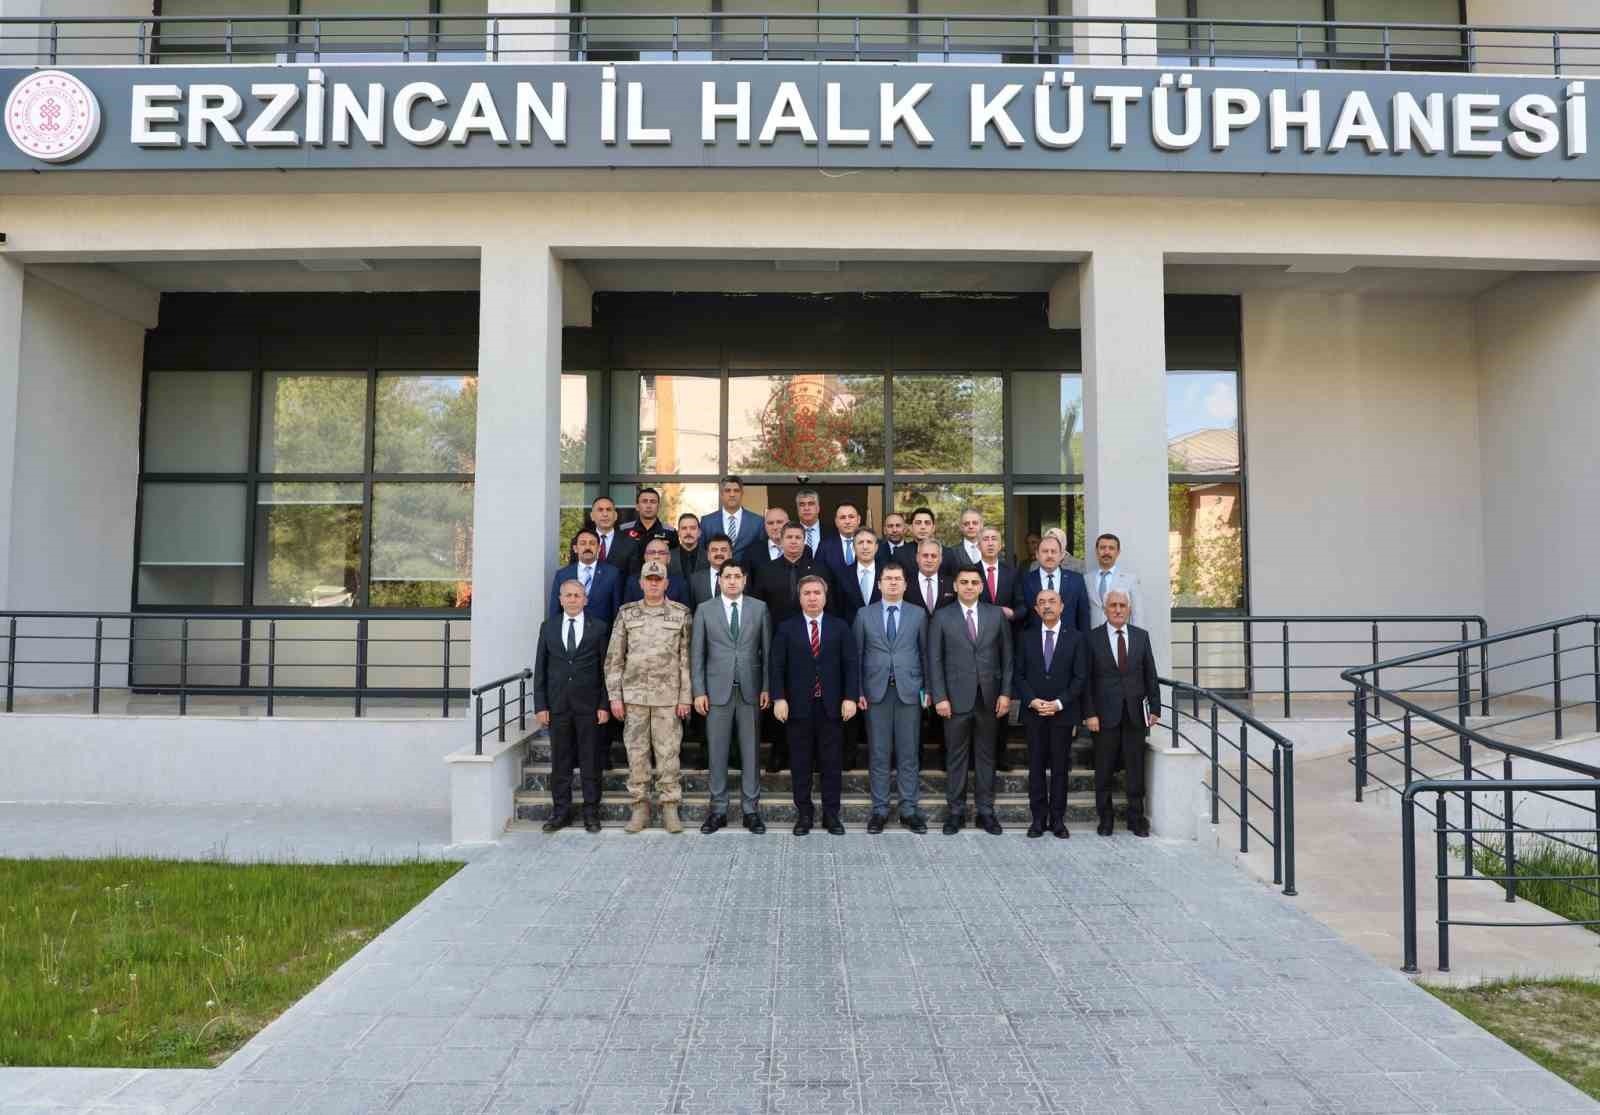 Erzincan’da projeler değerlendirildi
